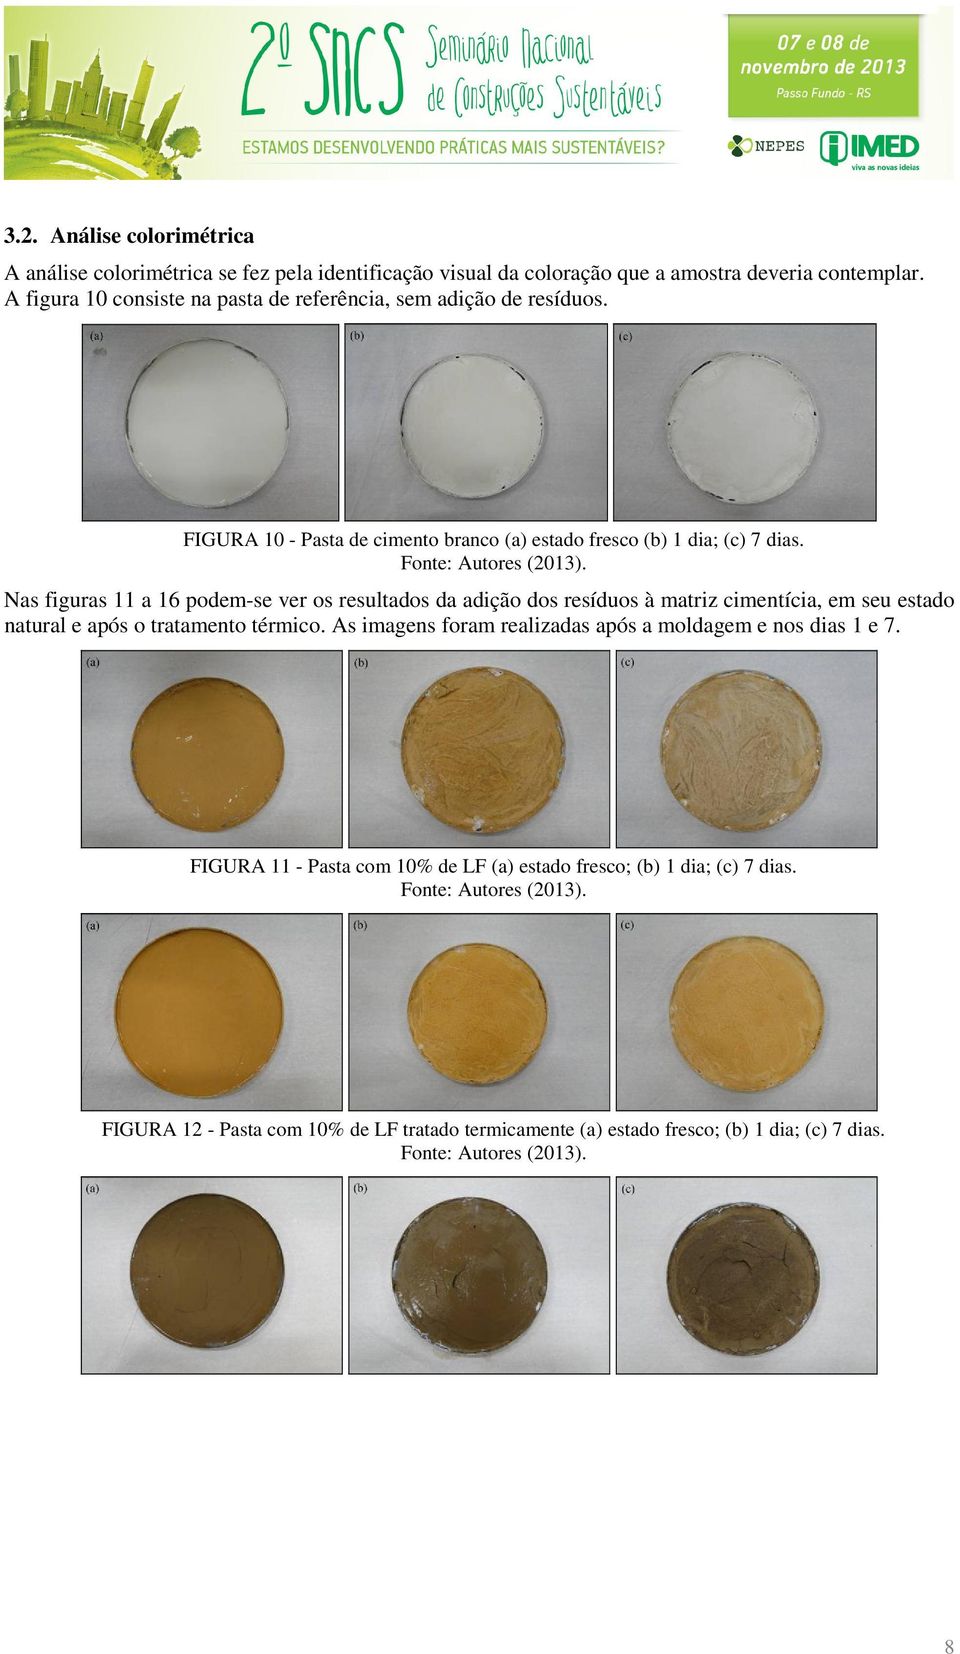 Nas figuras 11 a 16 podem-se ver os resultados da adição dos resíduos à matriz cimentícia, em seu estado natural e após o tratamento térmico.